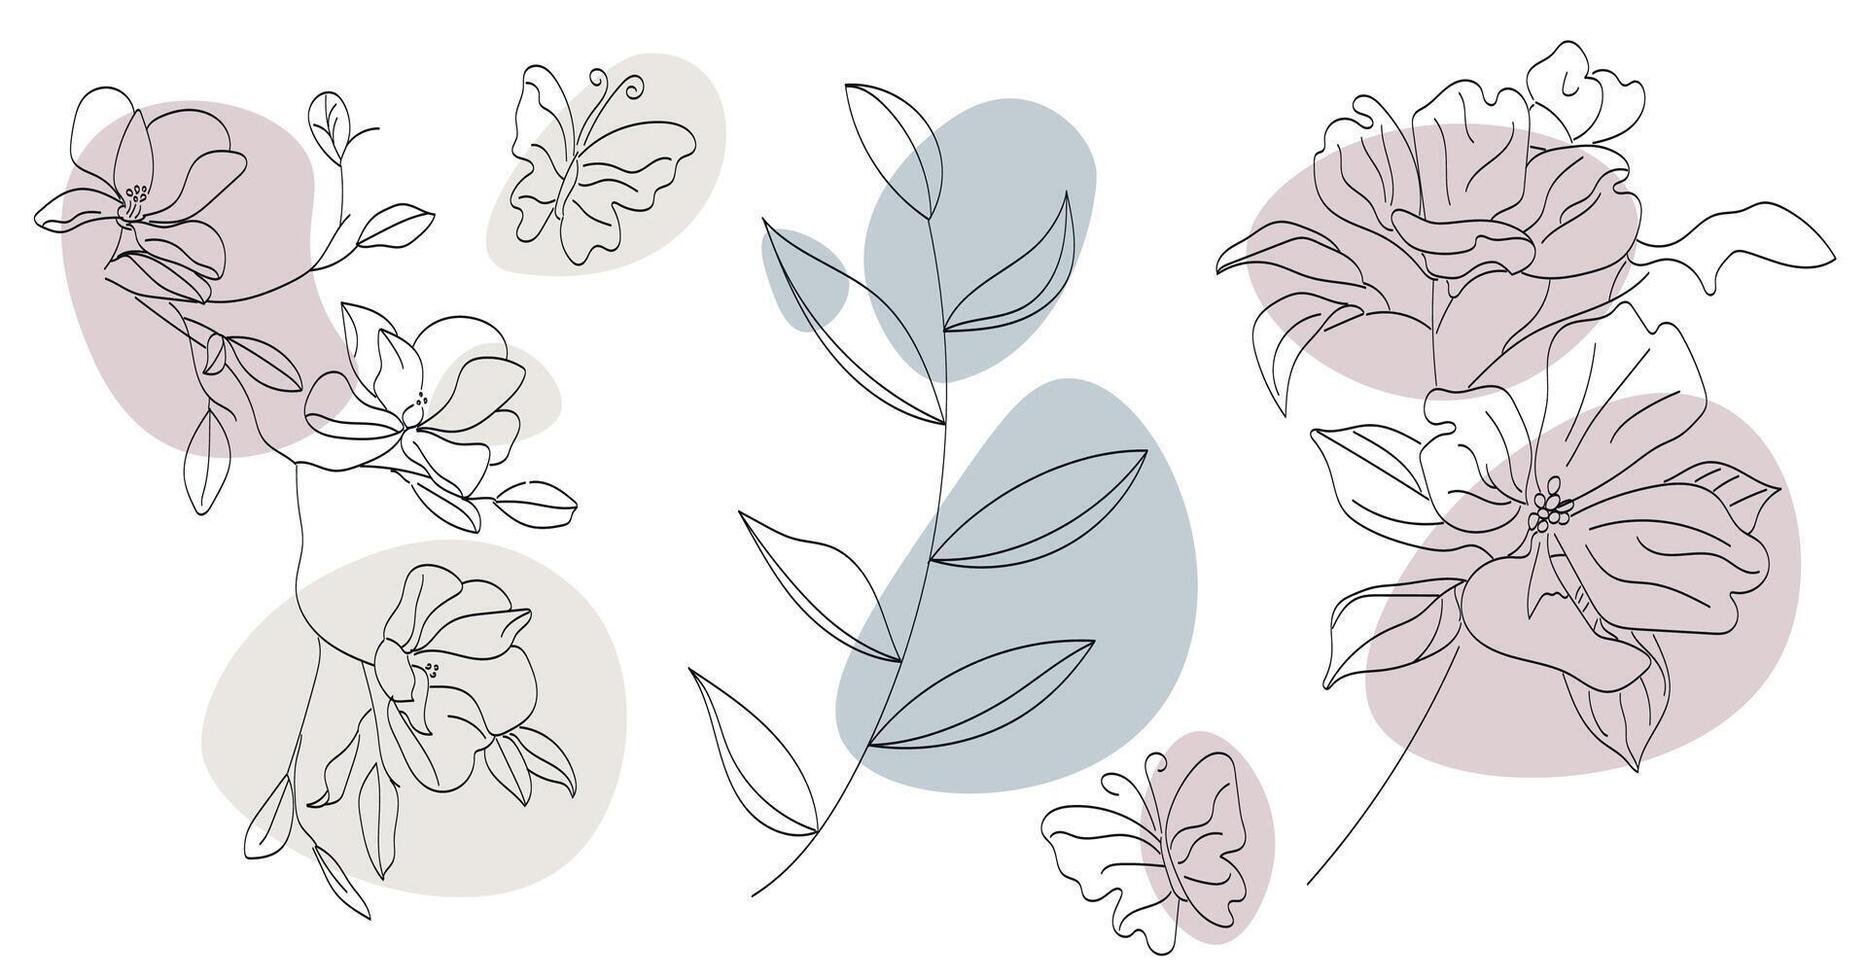 uppsättning av abstrakt minimalistisk linjär växter, blommor och fjärilar, i klotter stil, hand ritade, vektor illustration